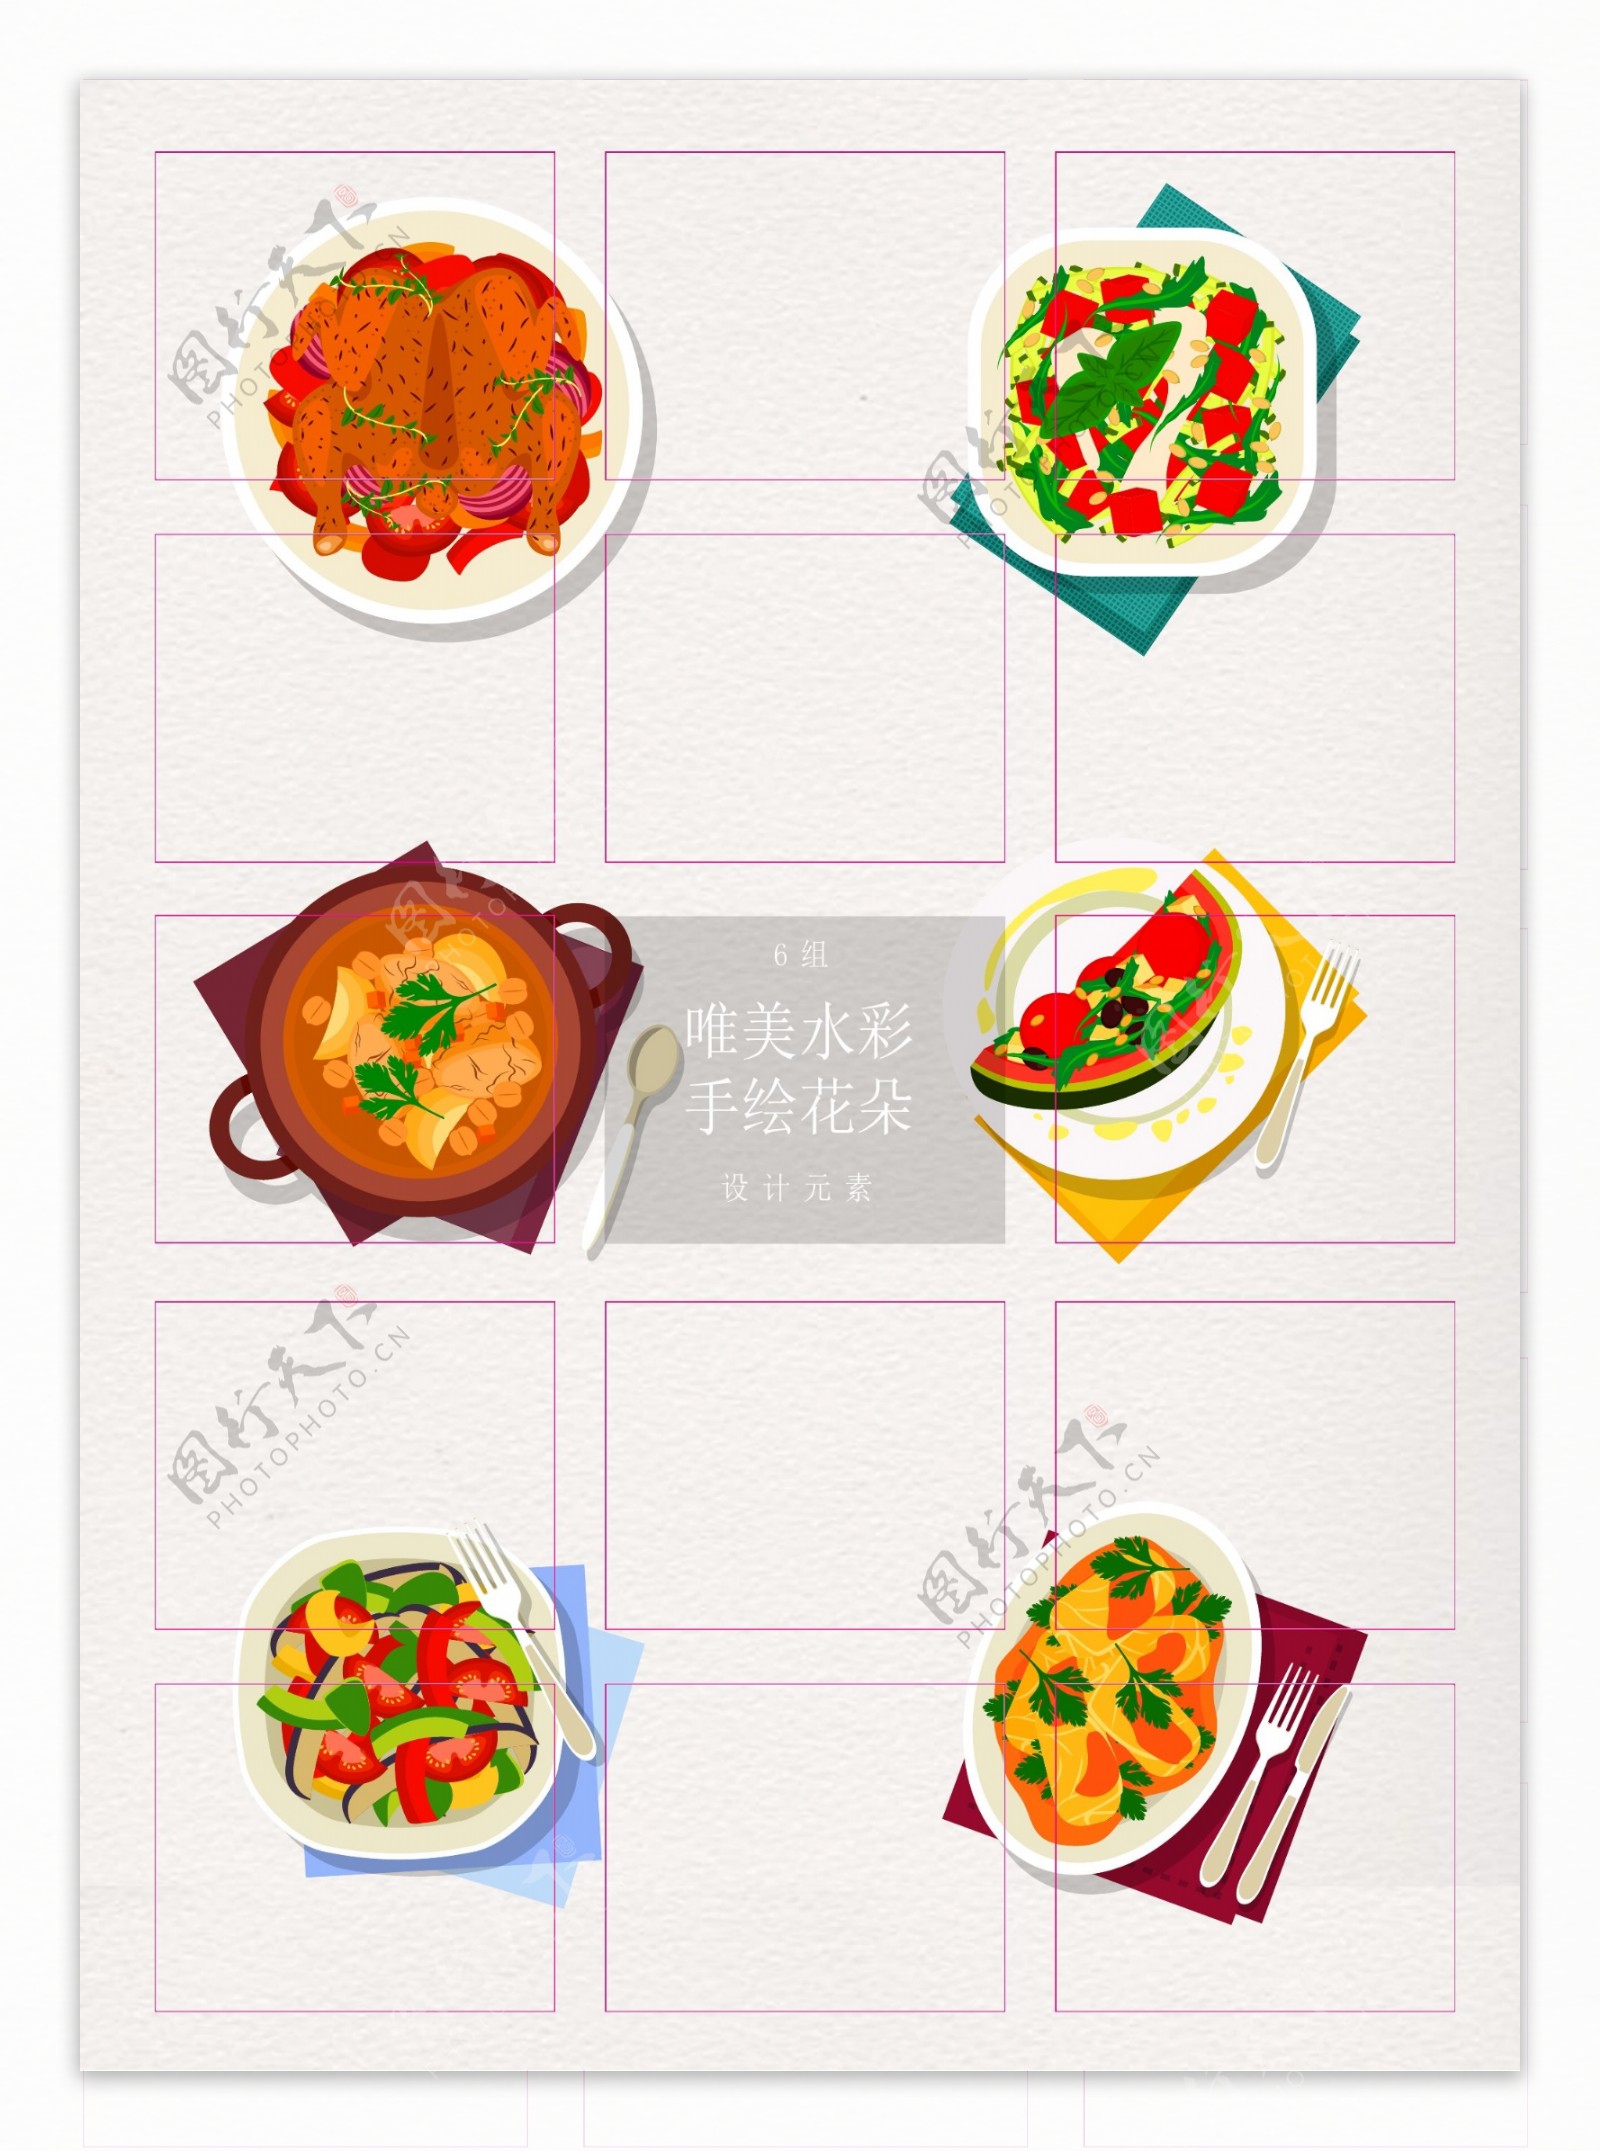 中西餐美食彩绘素材设计